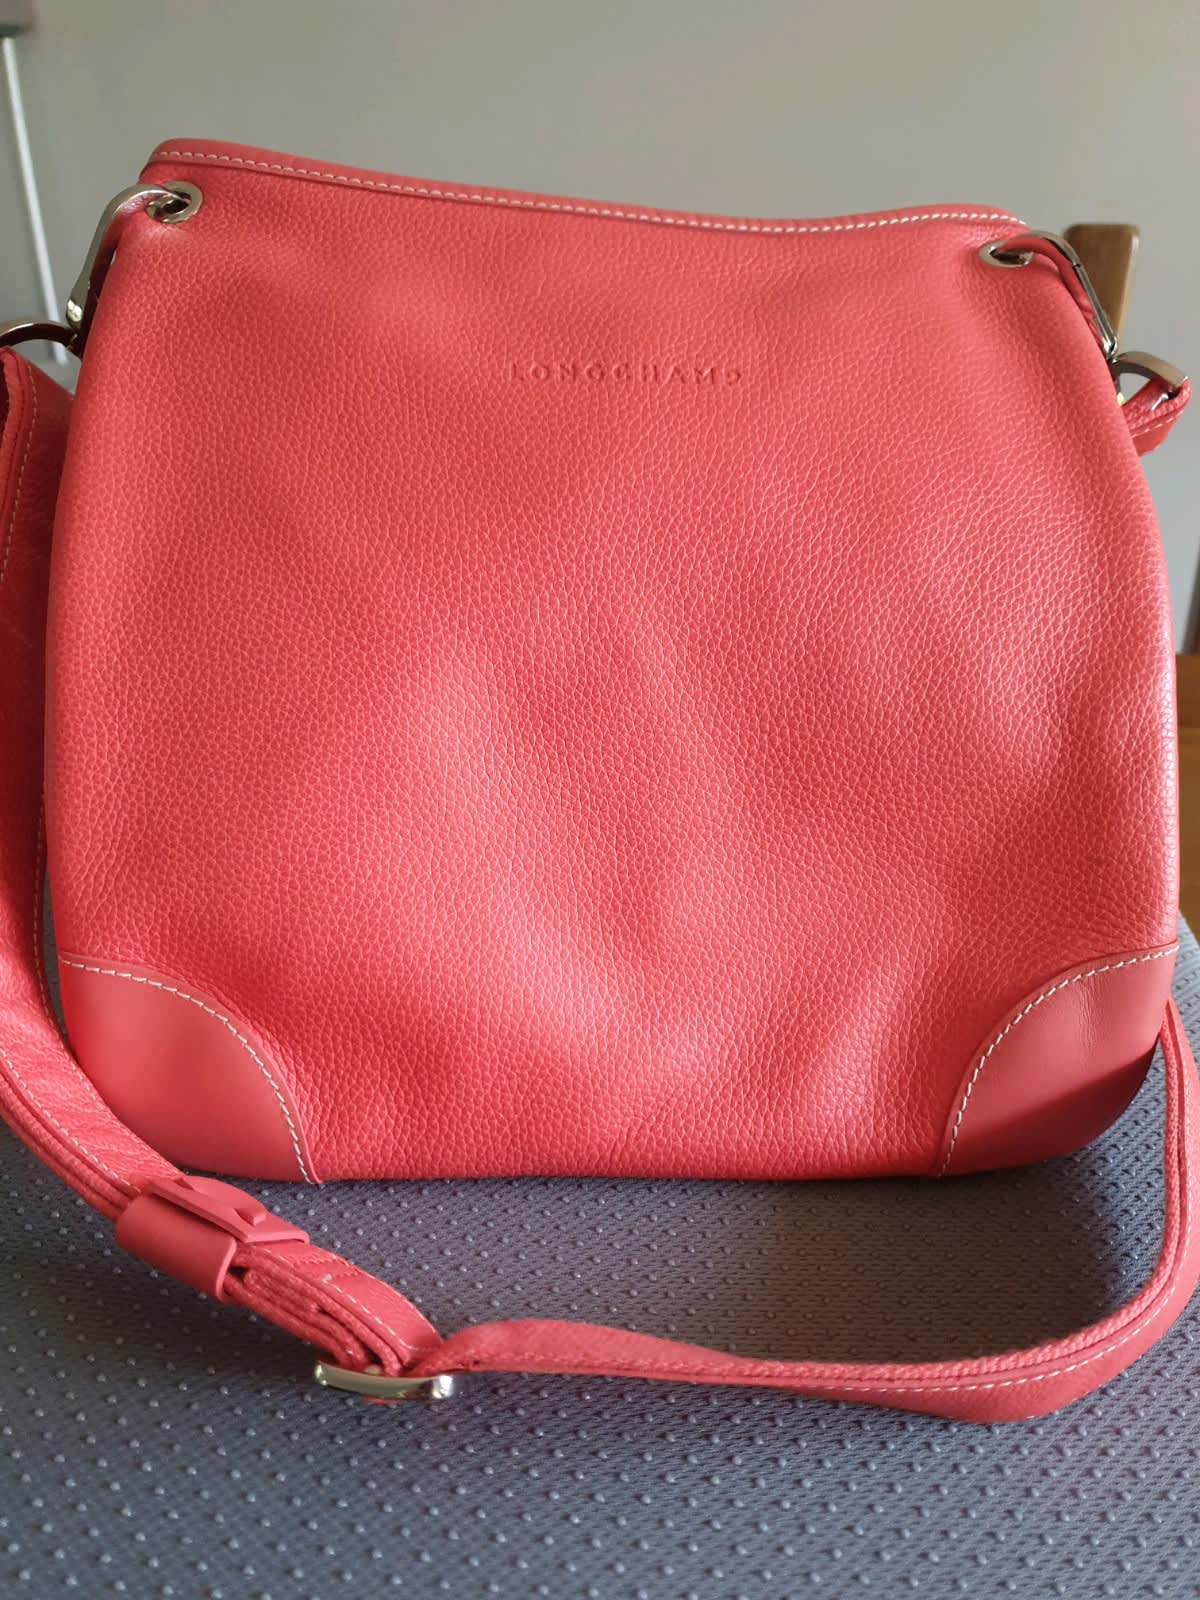 Longchamp-Le Pliage Hobo Messenger Bag - Couture Traders